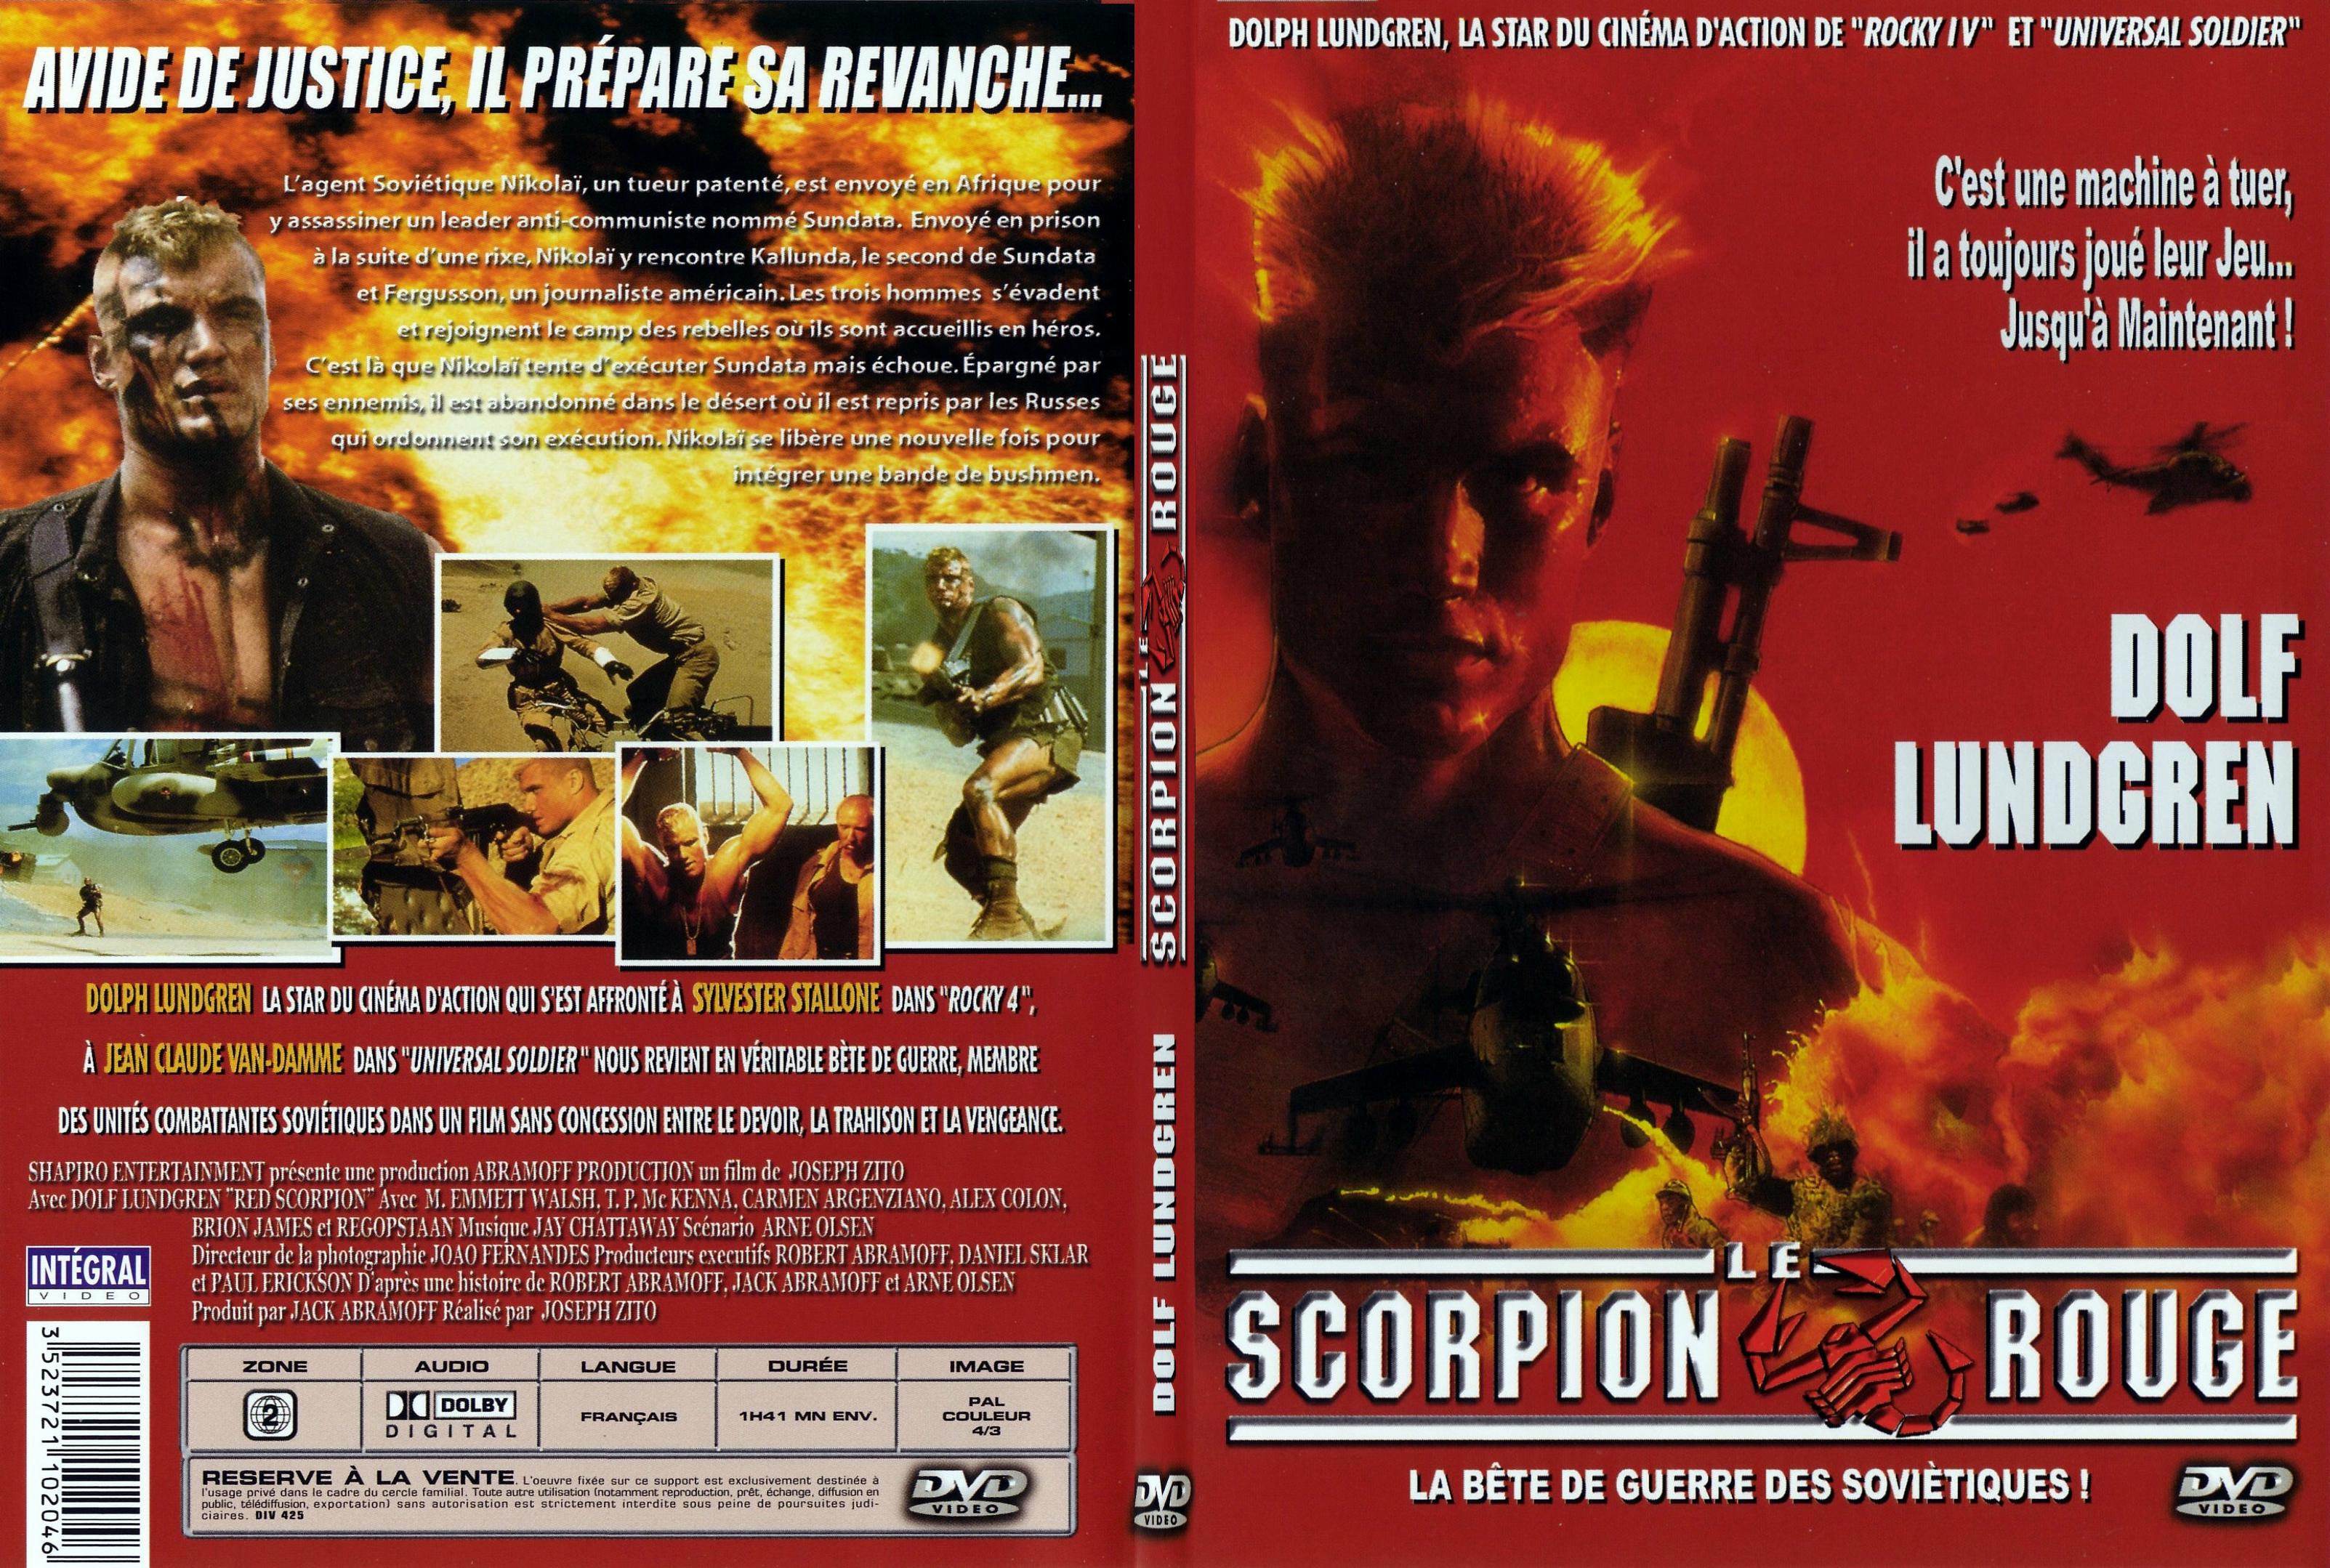 Jaquette DVD Le scorpion rouge - SLIM